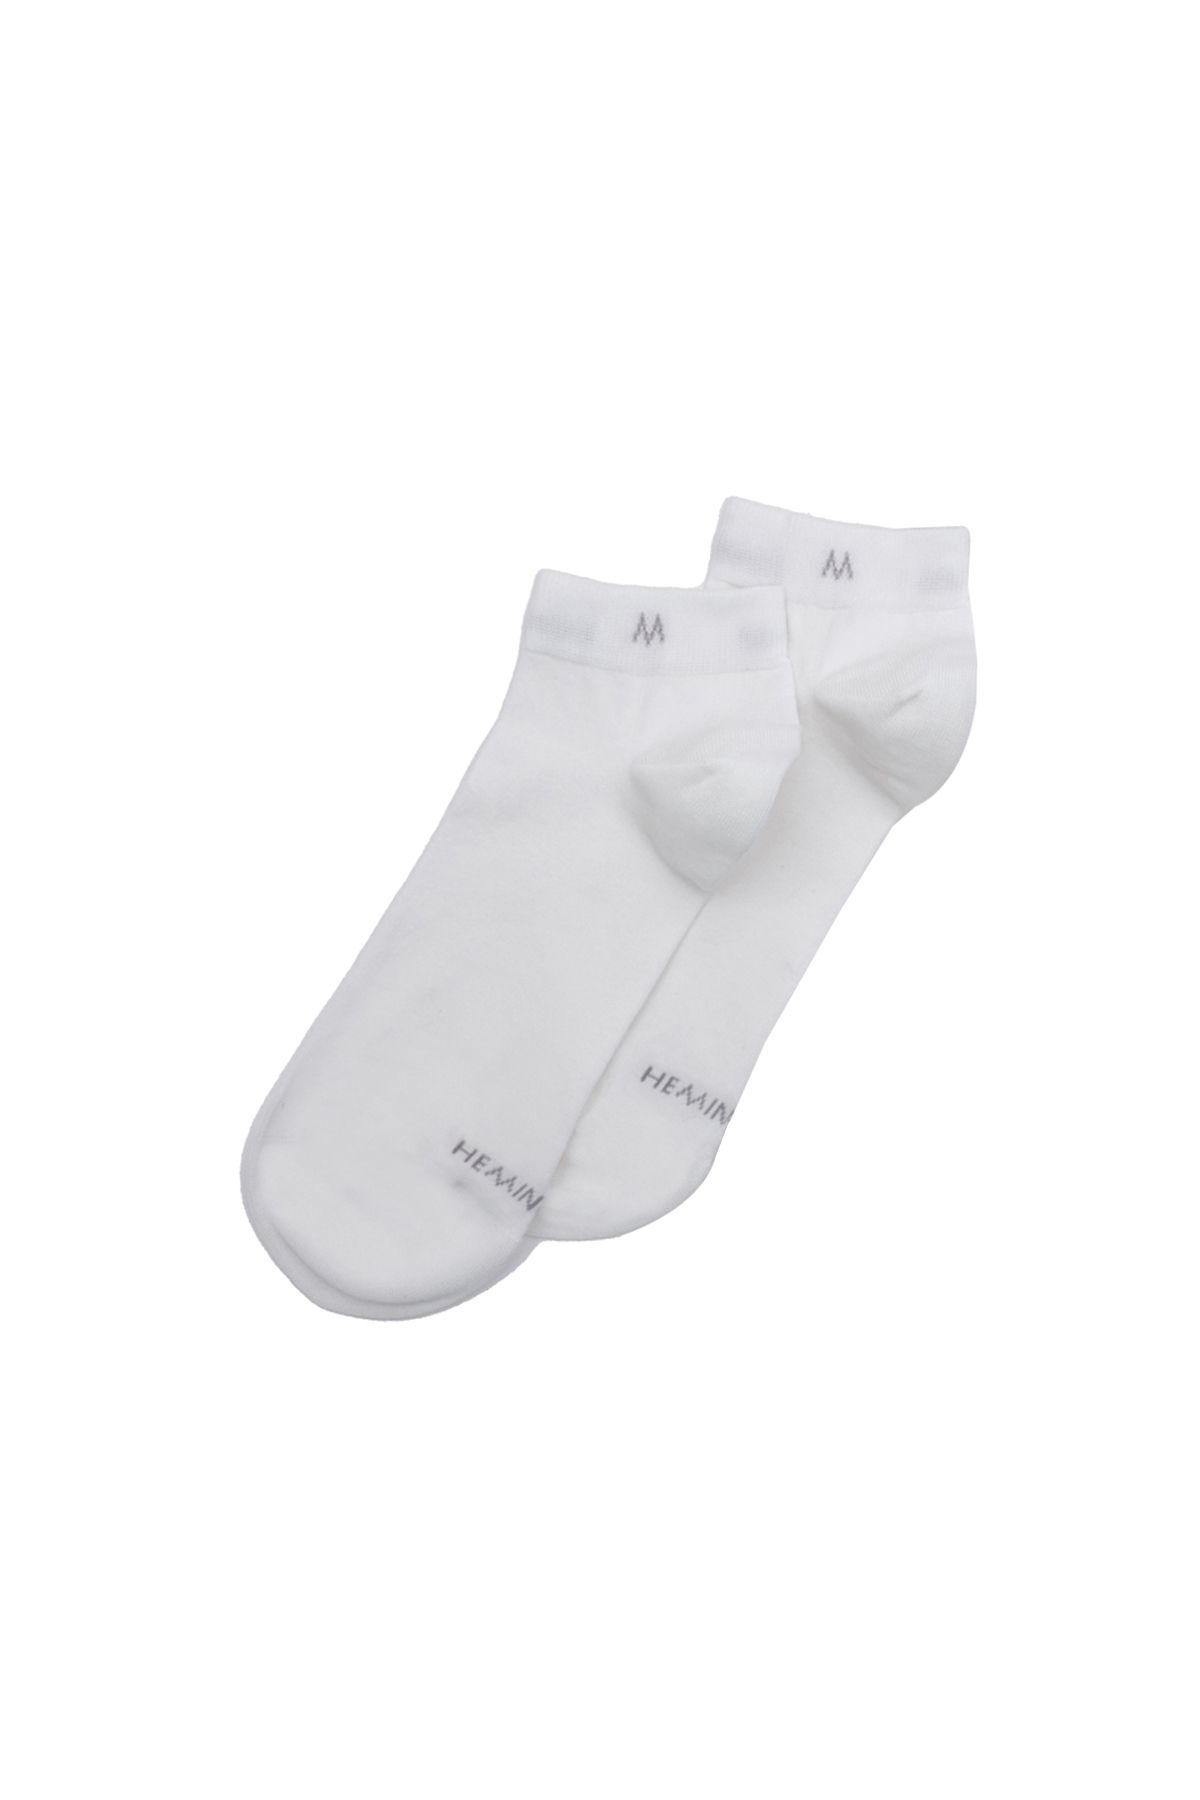 Hemington Pamuklu Kırık Beyaz Ikili Sneaker Çorap Seti